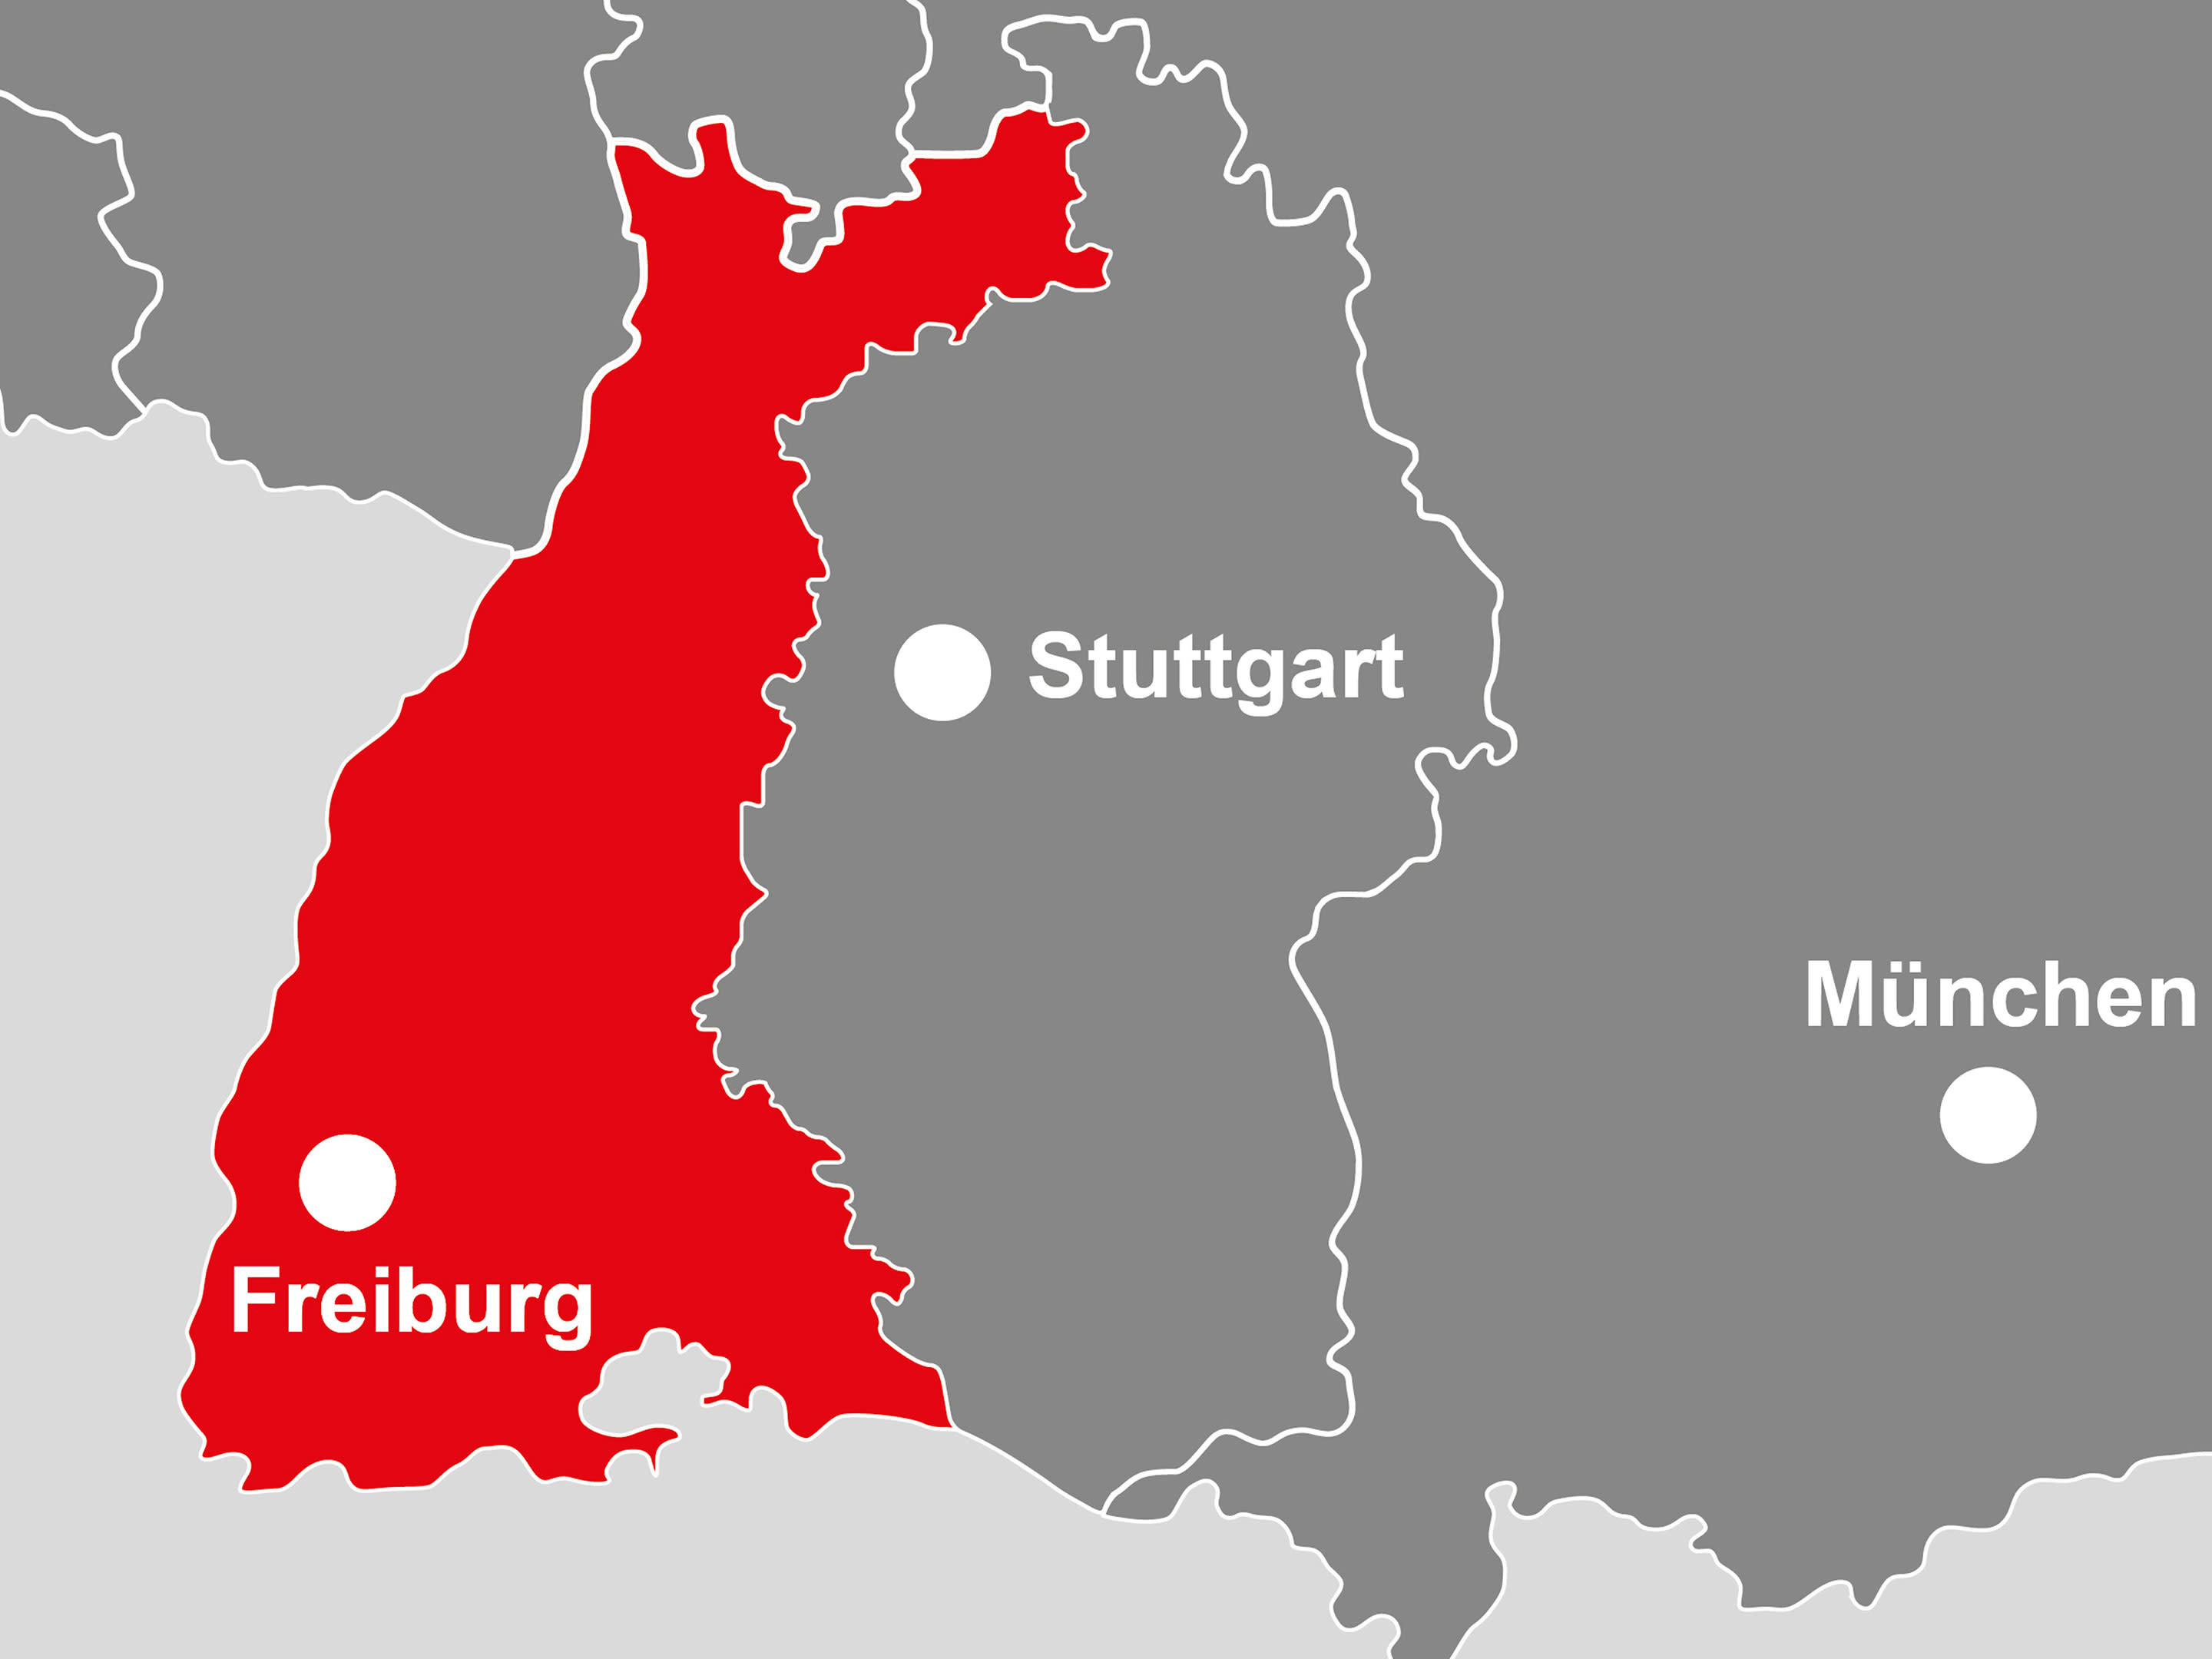 Bild: geografische Karte vom Einzugsgebiet des SRE-Bereichs Freiburg